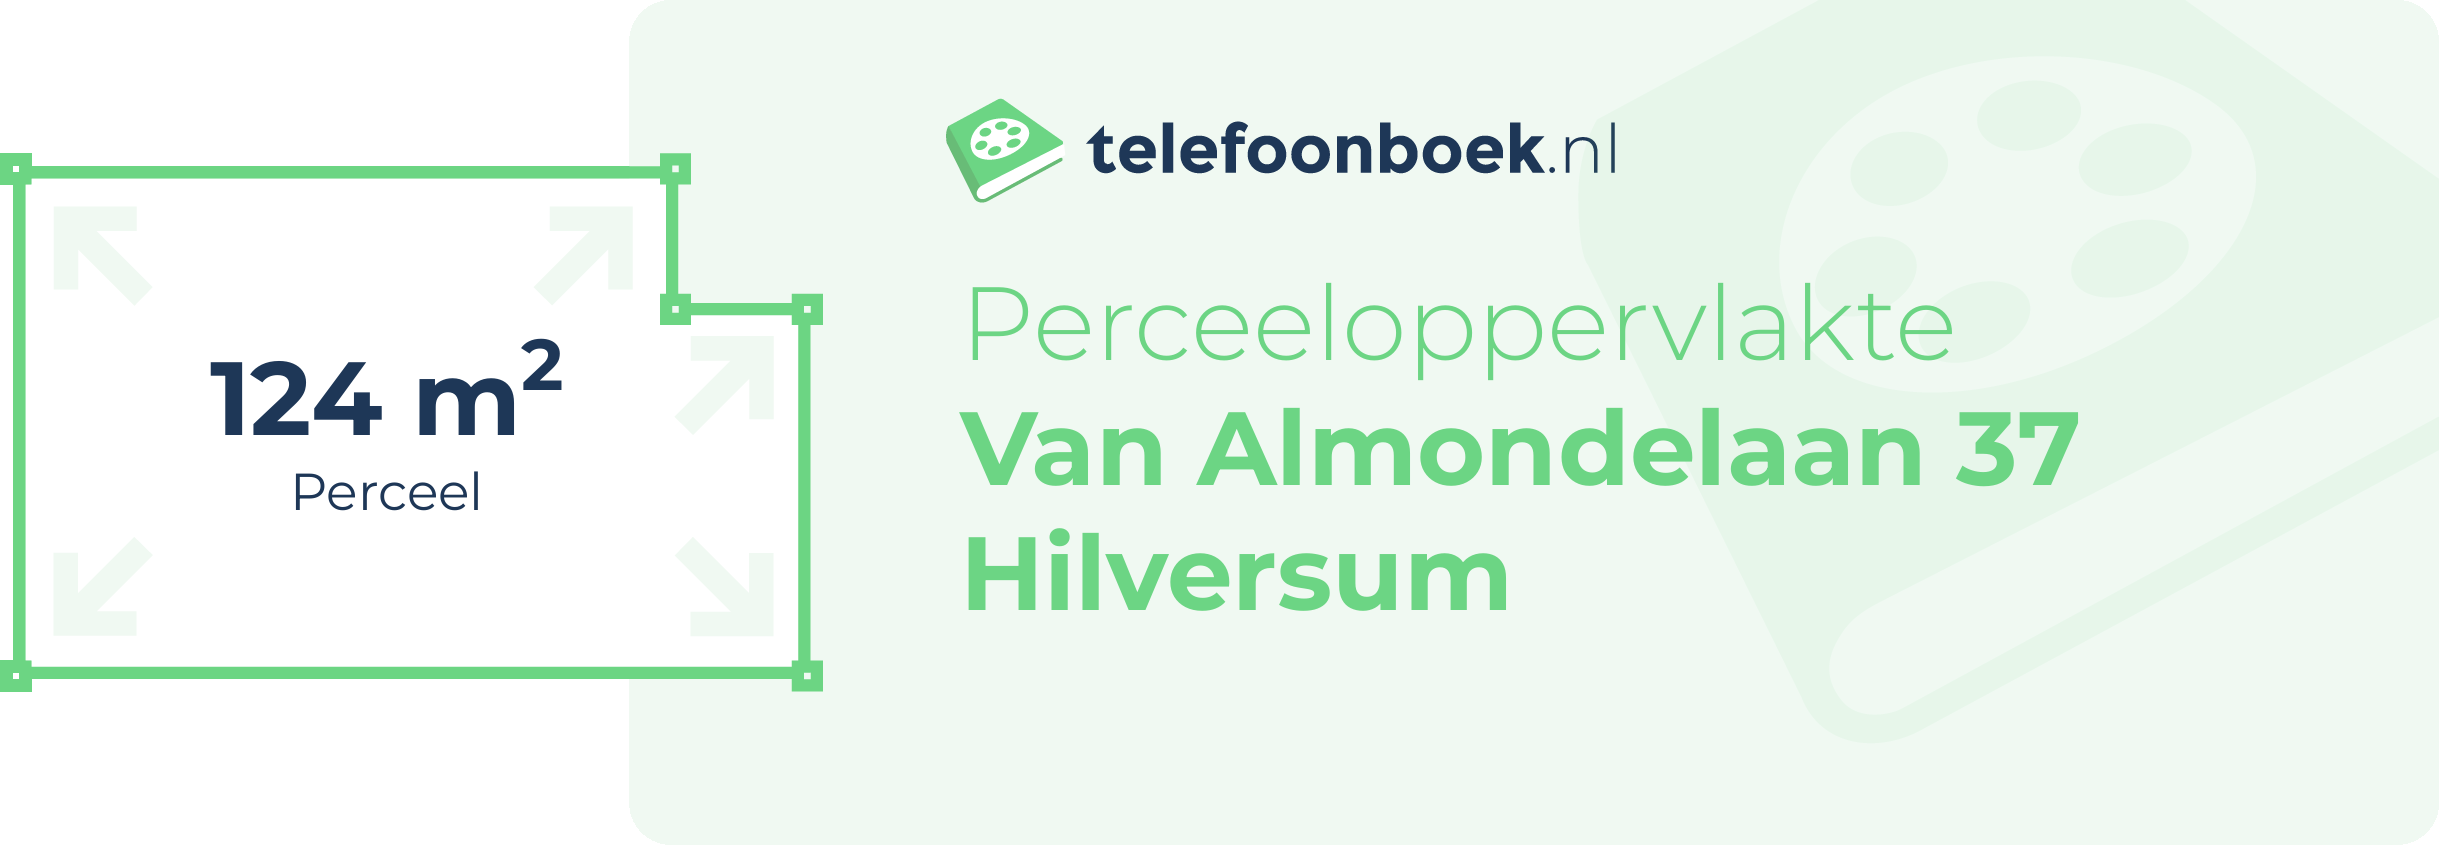 Perceeloppervlakte Van Almondelaan 37 Hilversum